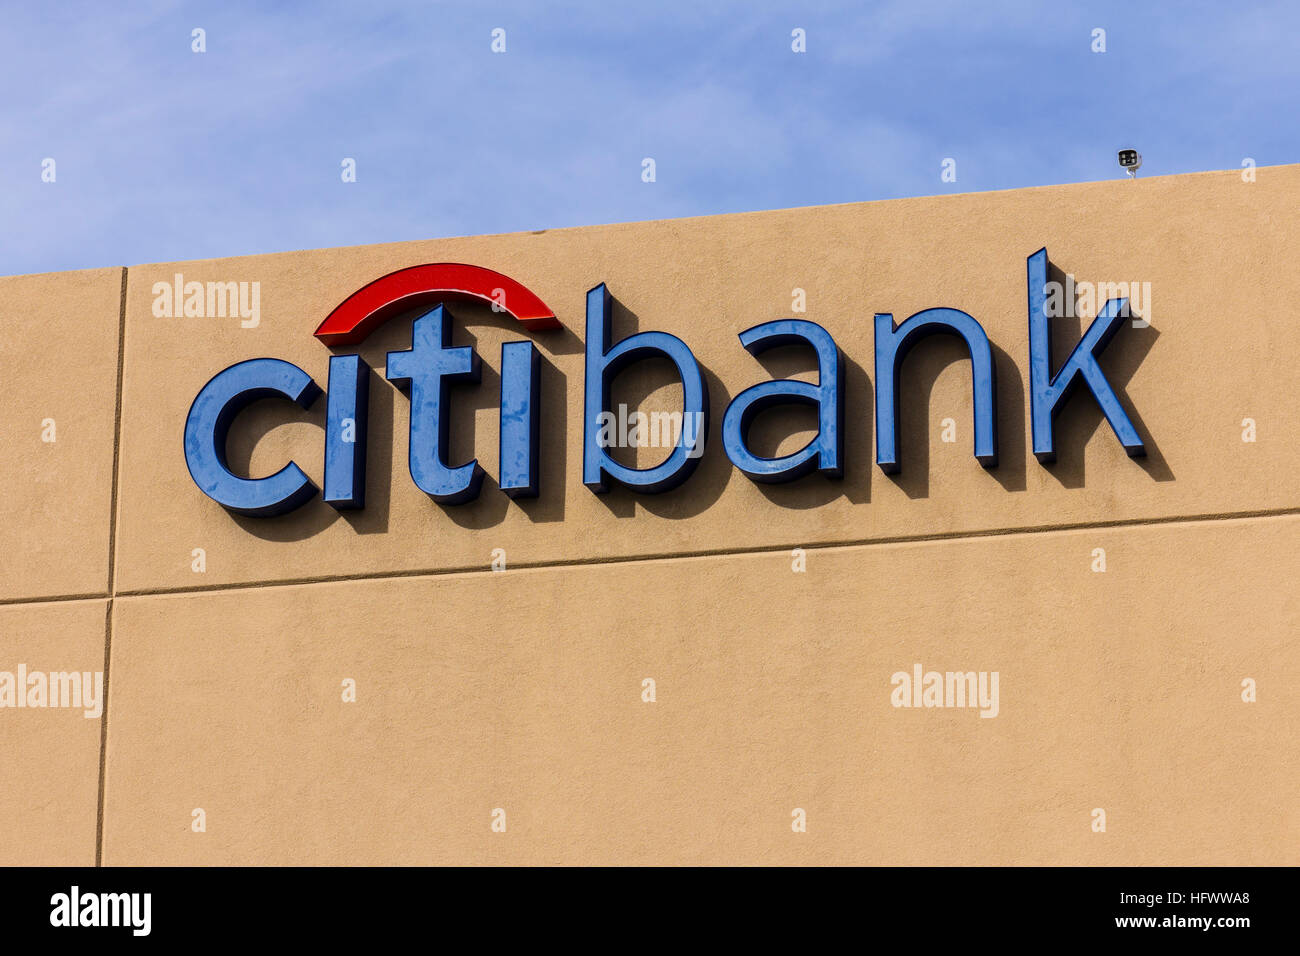 Las Vegas - Circa Décembre 2016 : Direction générale de la consommation de la Citibank. Citibank est la division des consommateurs de services financiers Citigroup multinationales JE Banque D'Images